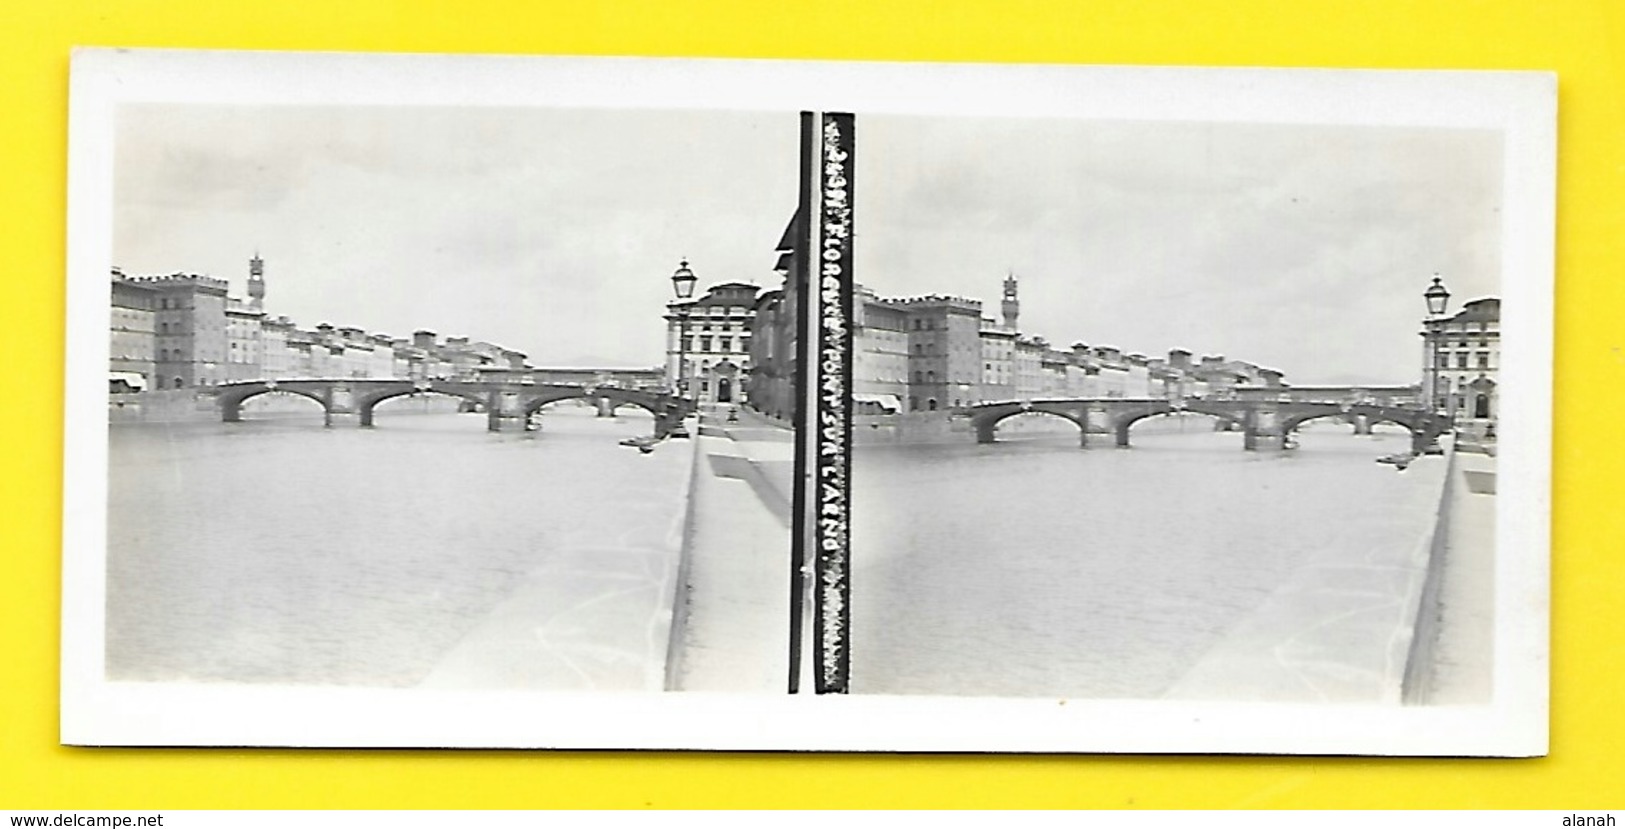 Vues Stéréos FLORENCE Pont Sur L'Arno - Stereo-Photographie